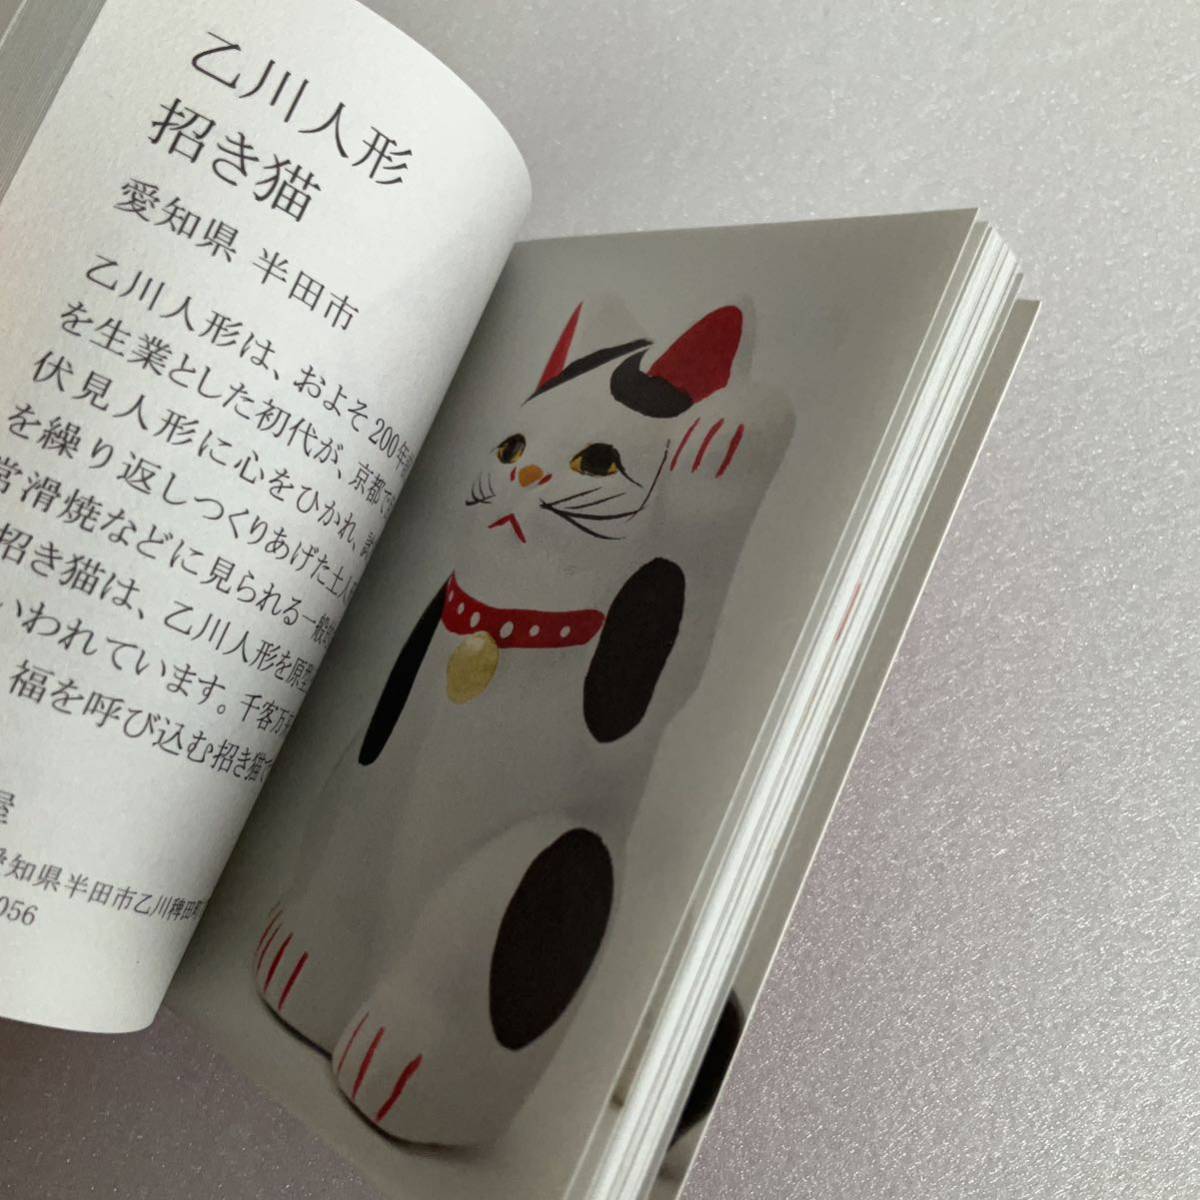 無印良品 MUJI 福缶 リーフレット 『日本の縁起物』 冊子 2015 2016 2017 2018_画像4